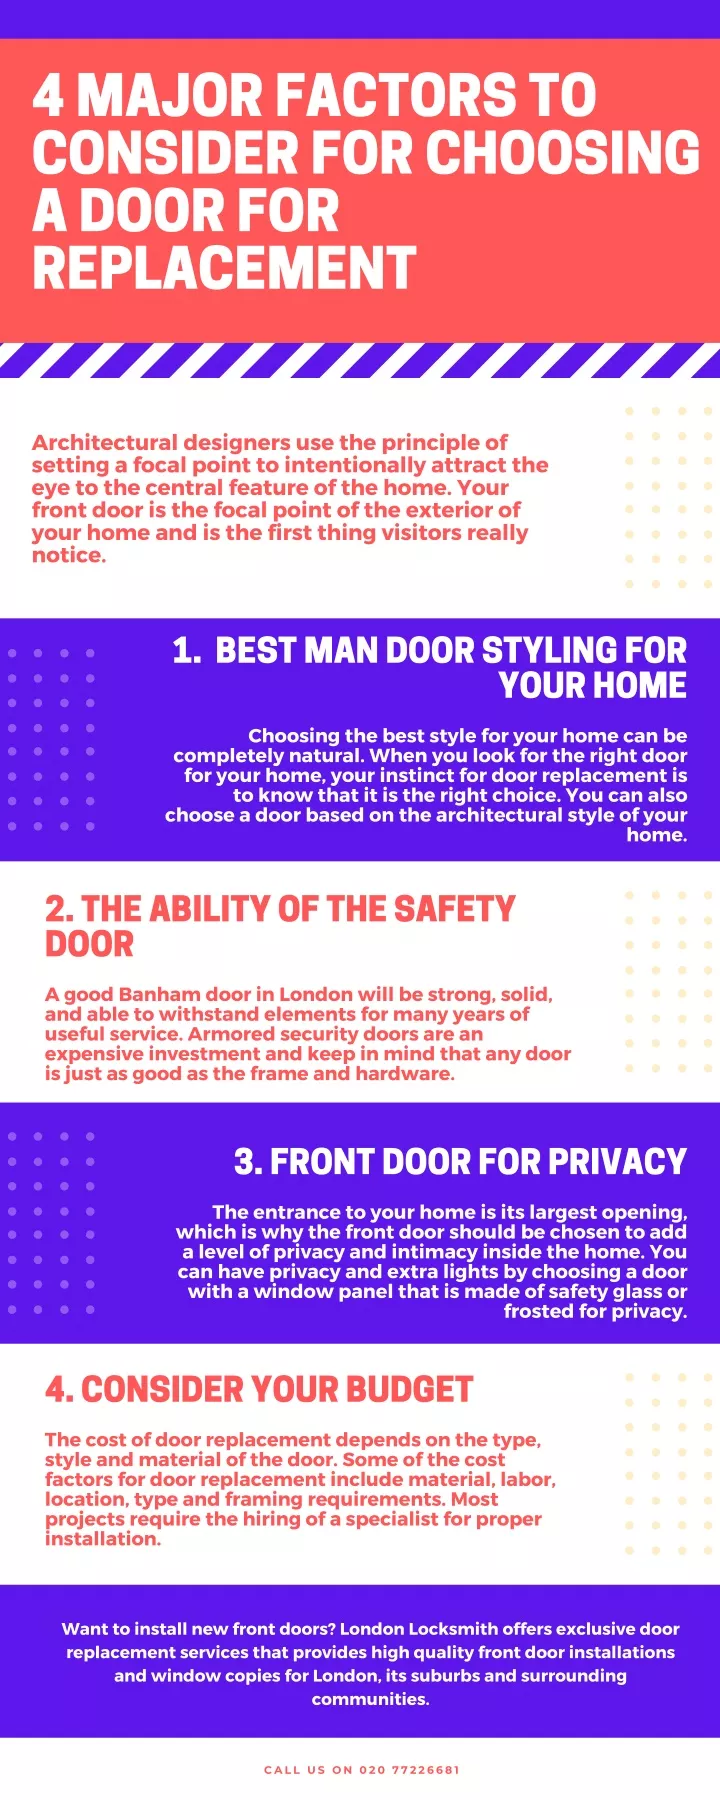 4 major factors to consider for choosing a door